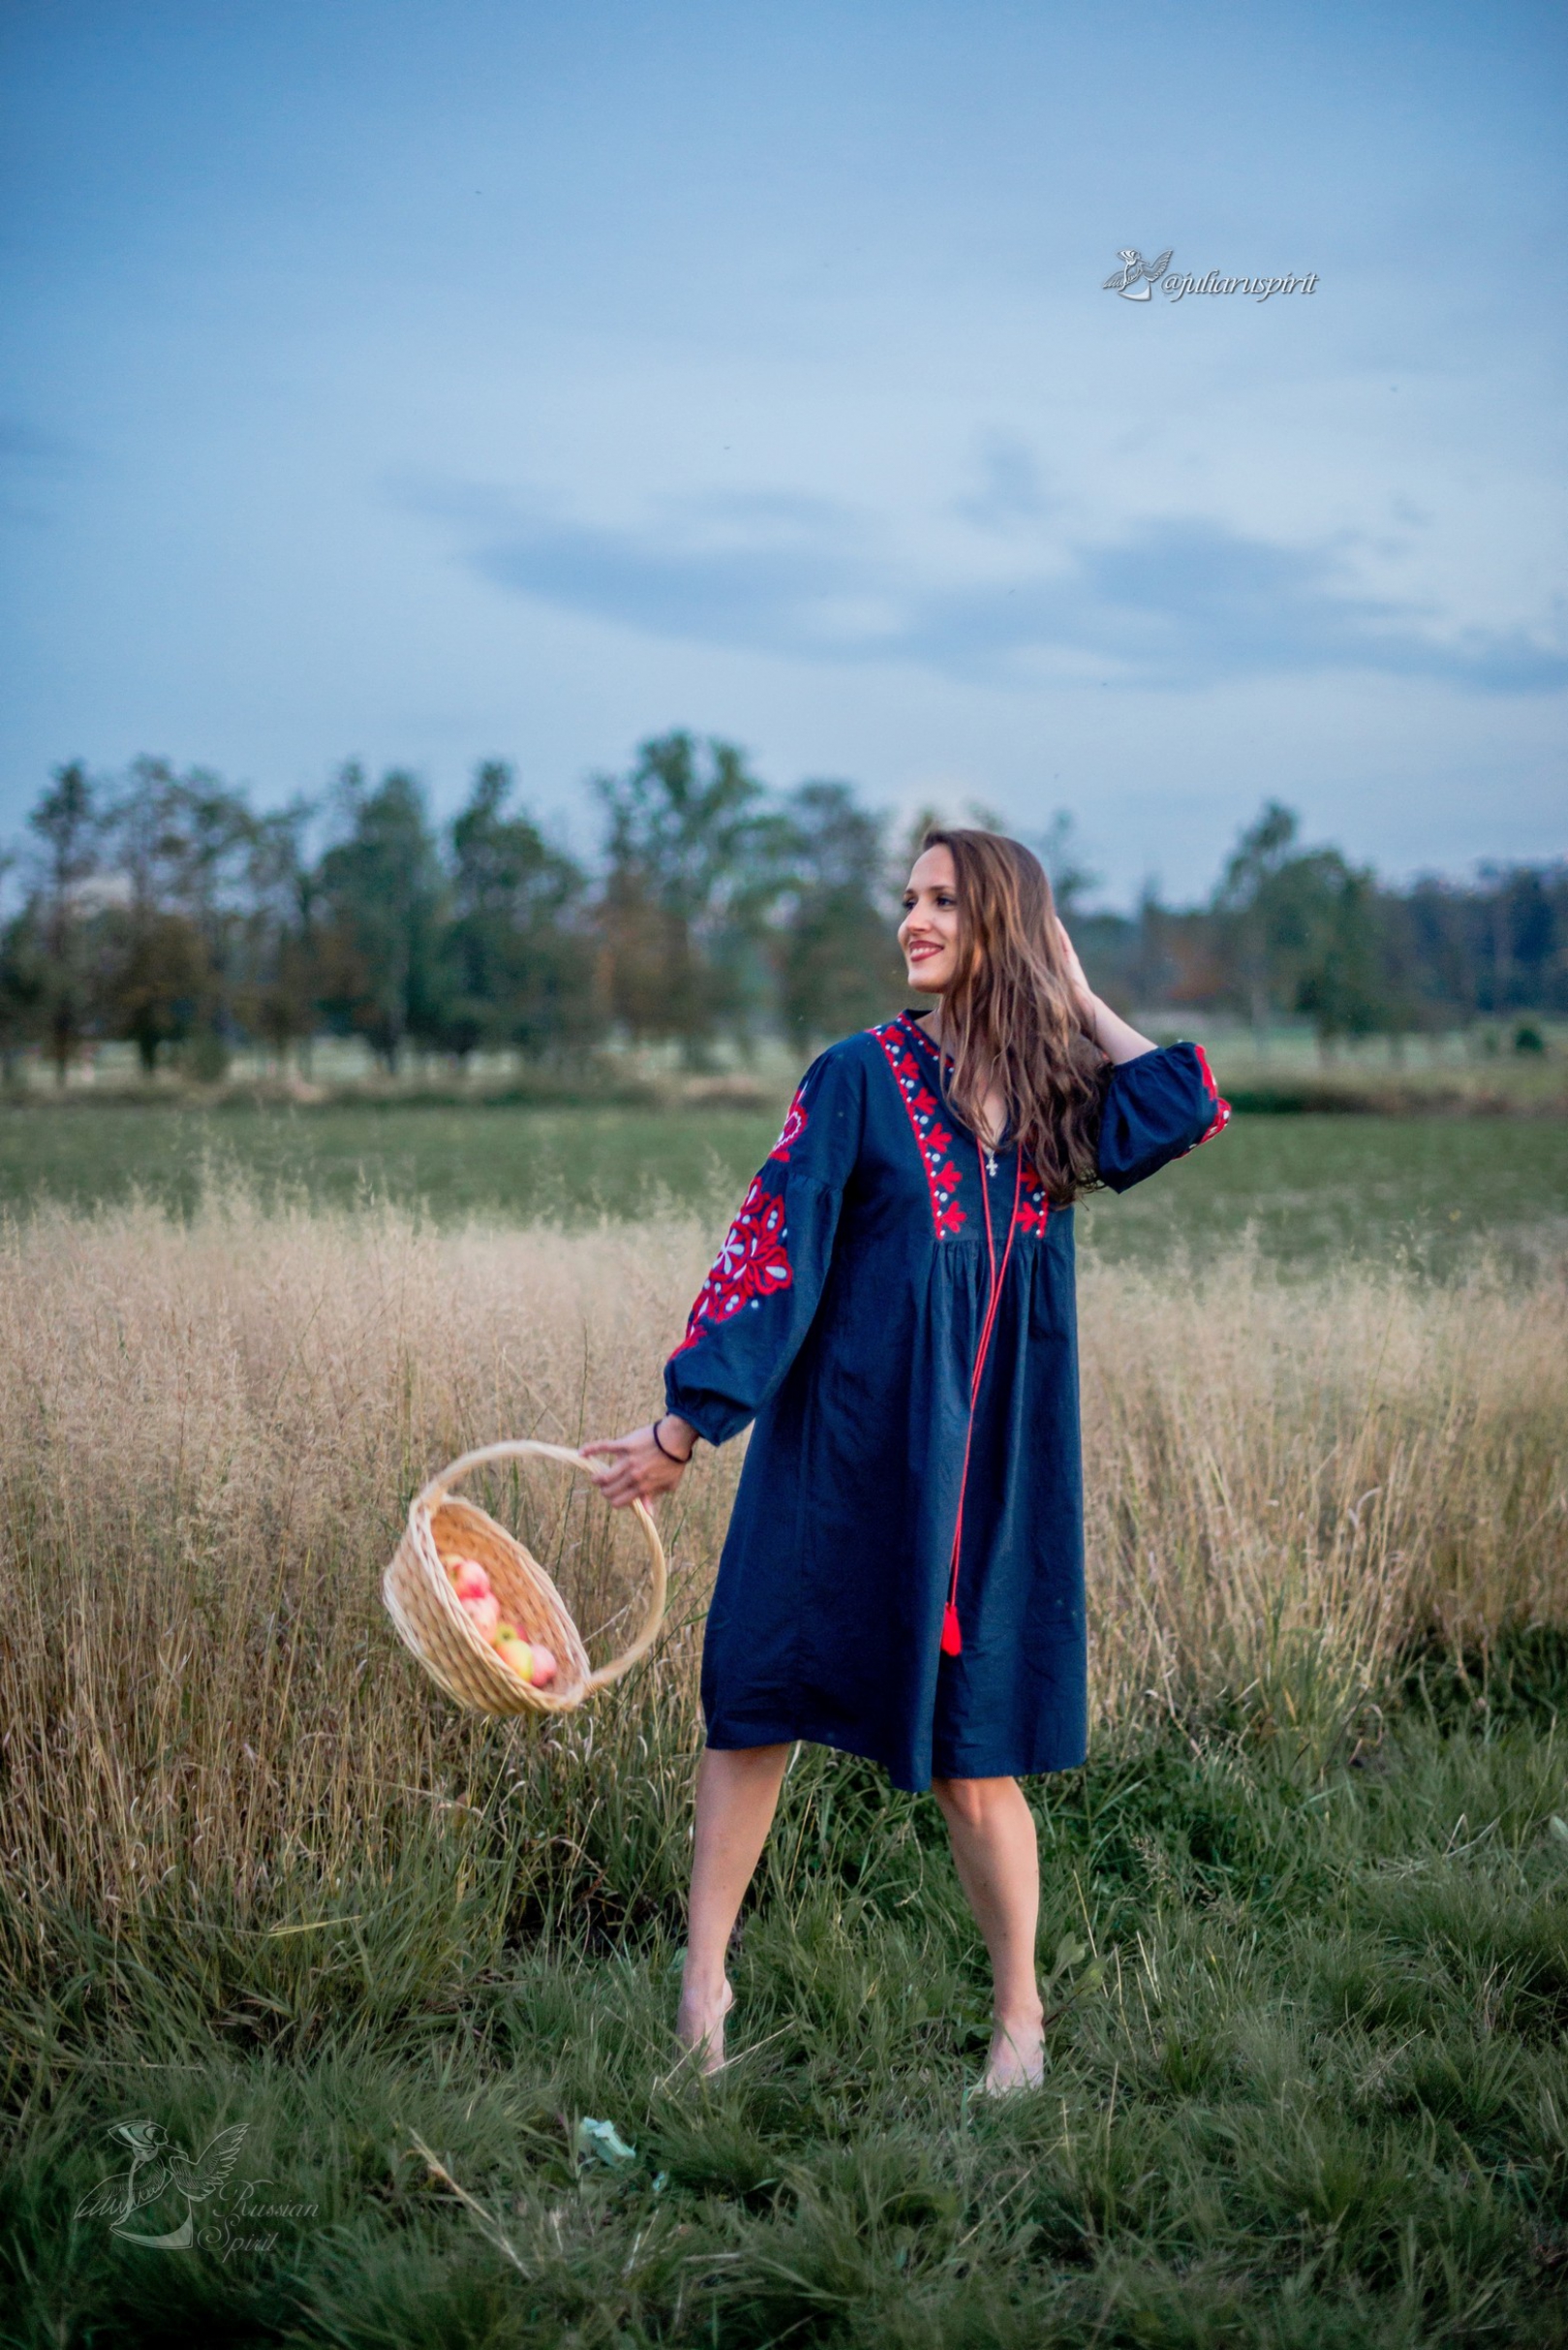 девушка с корзиной яблок в поле в национальном синем платье